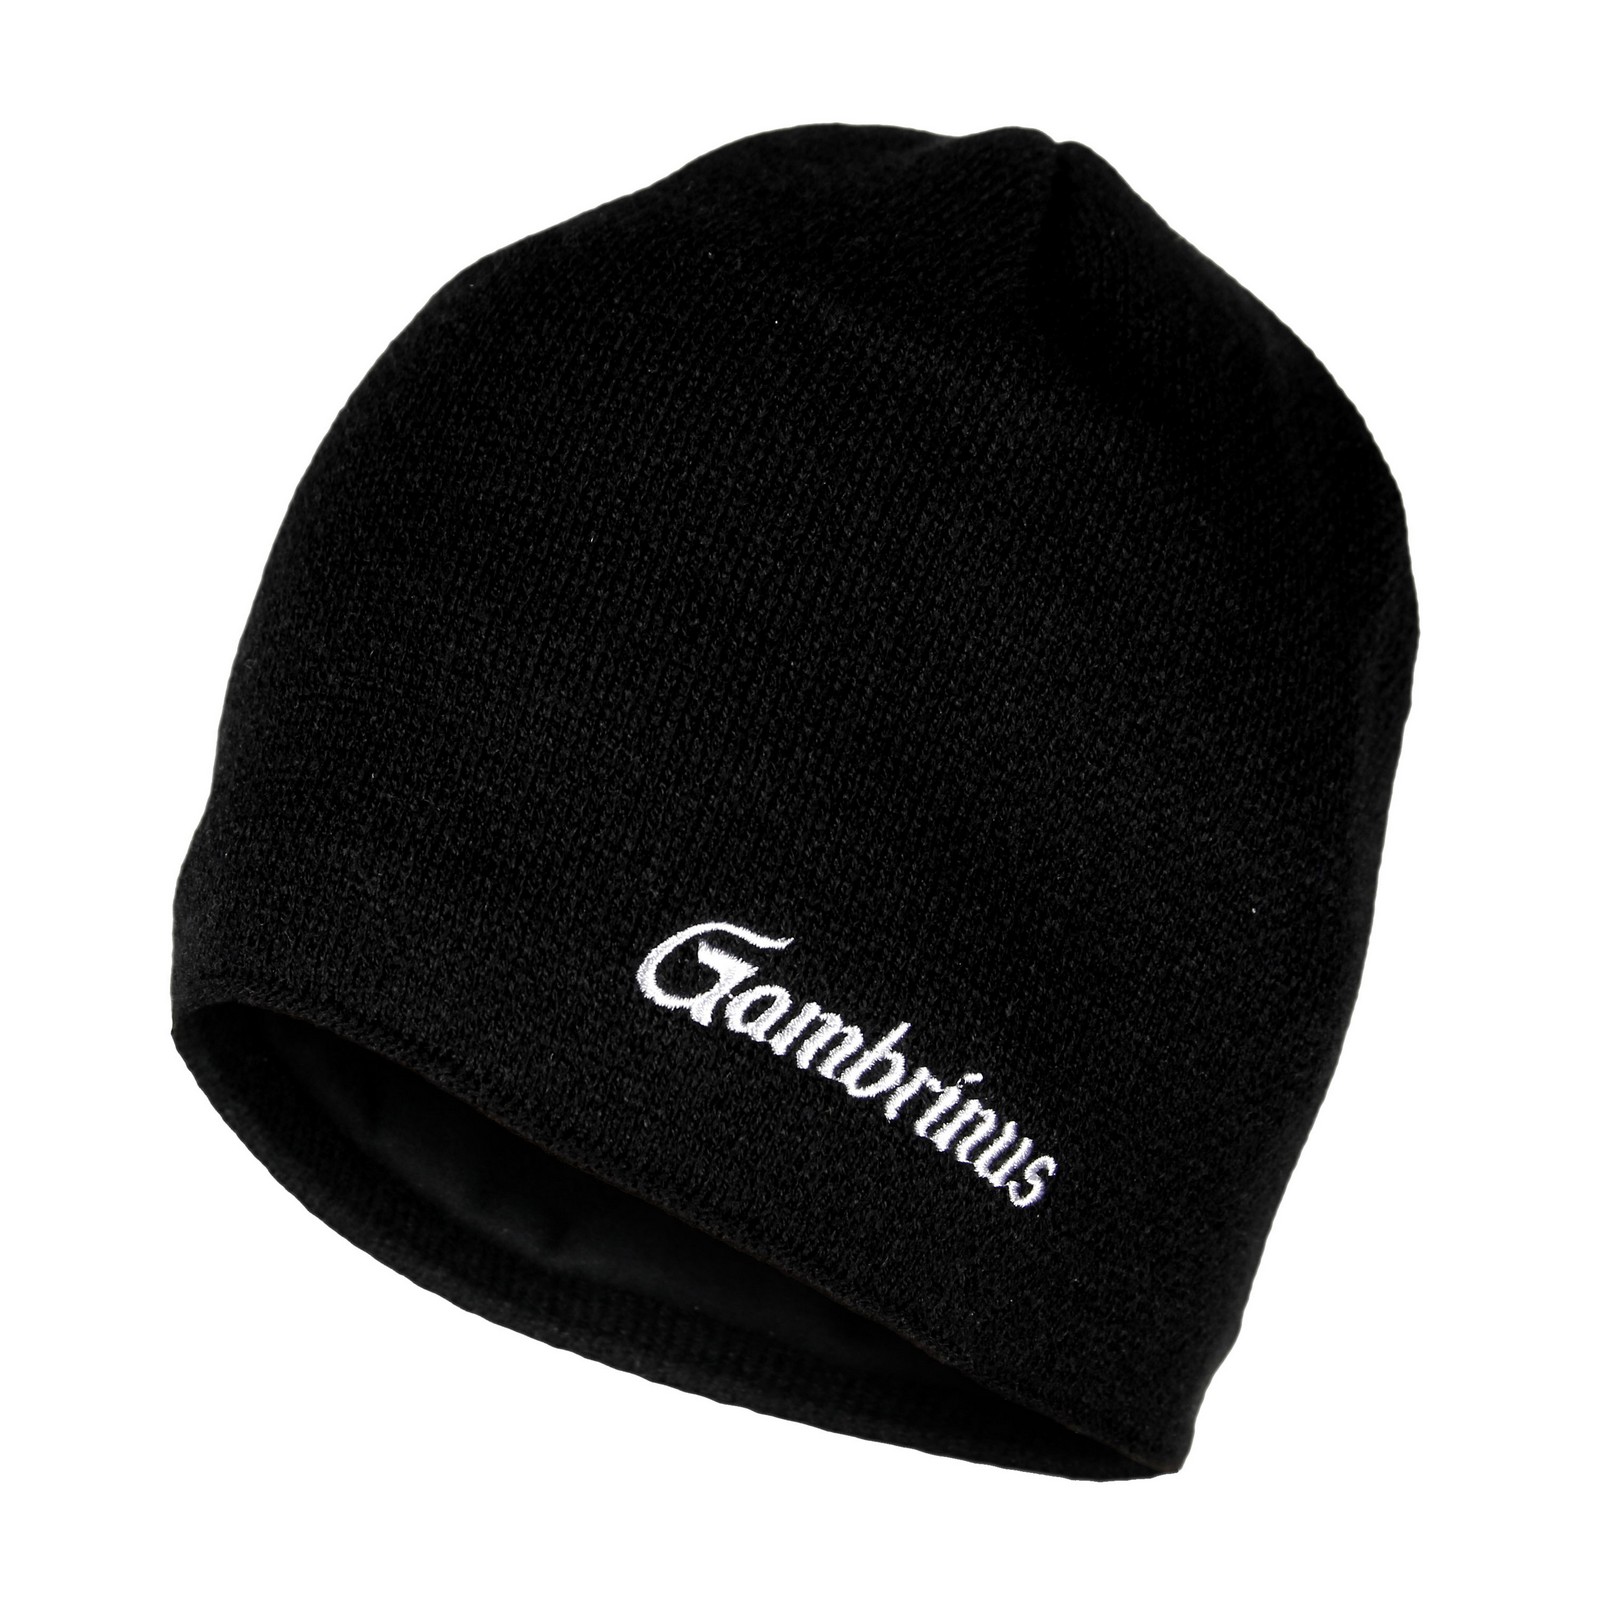 Gambrinus schwarzer Hut